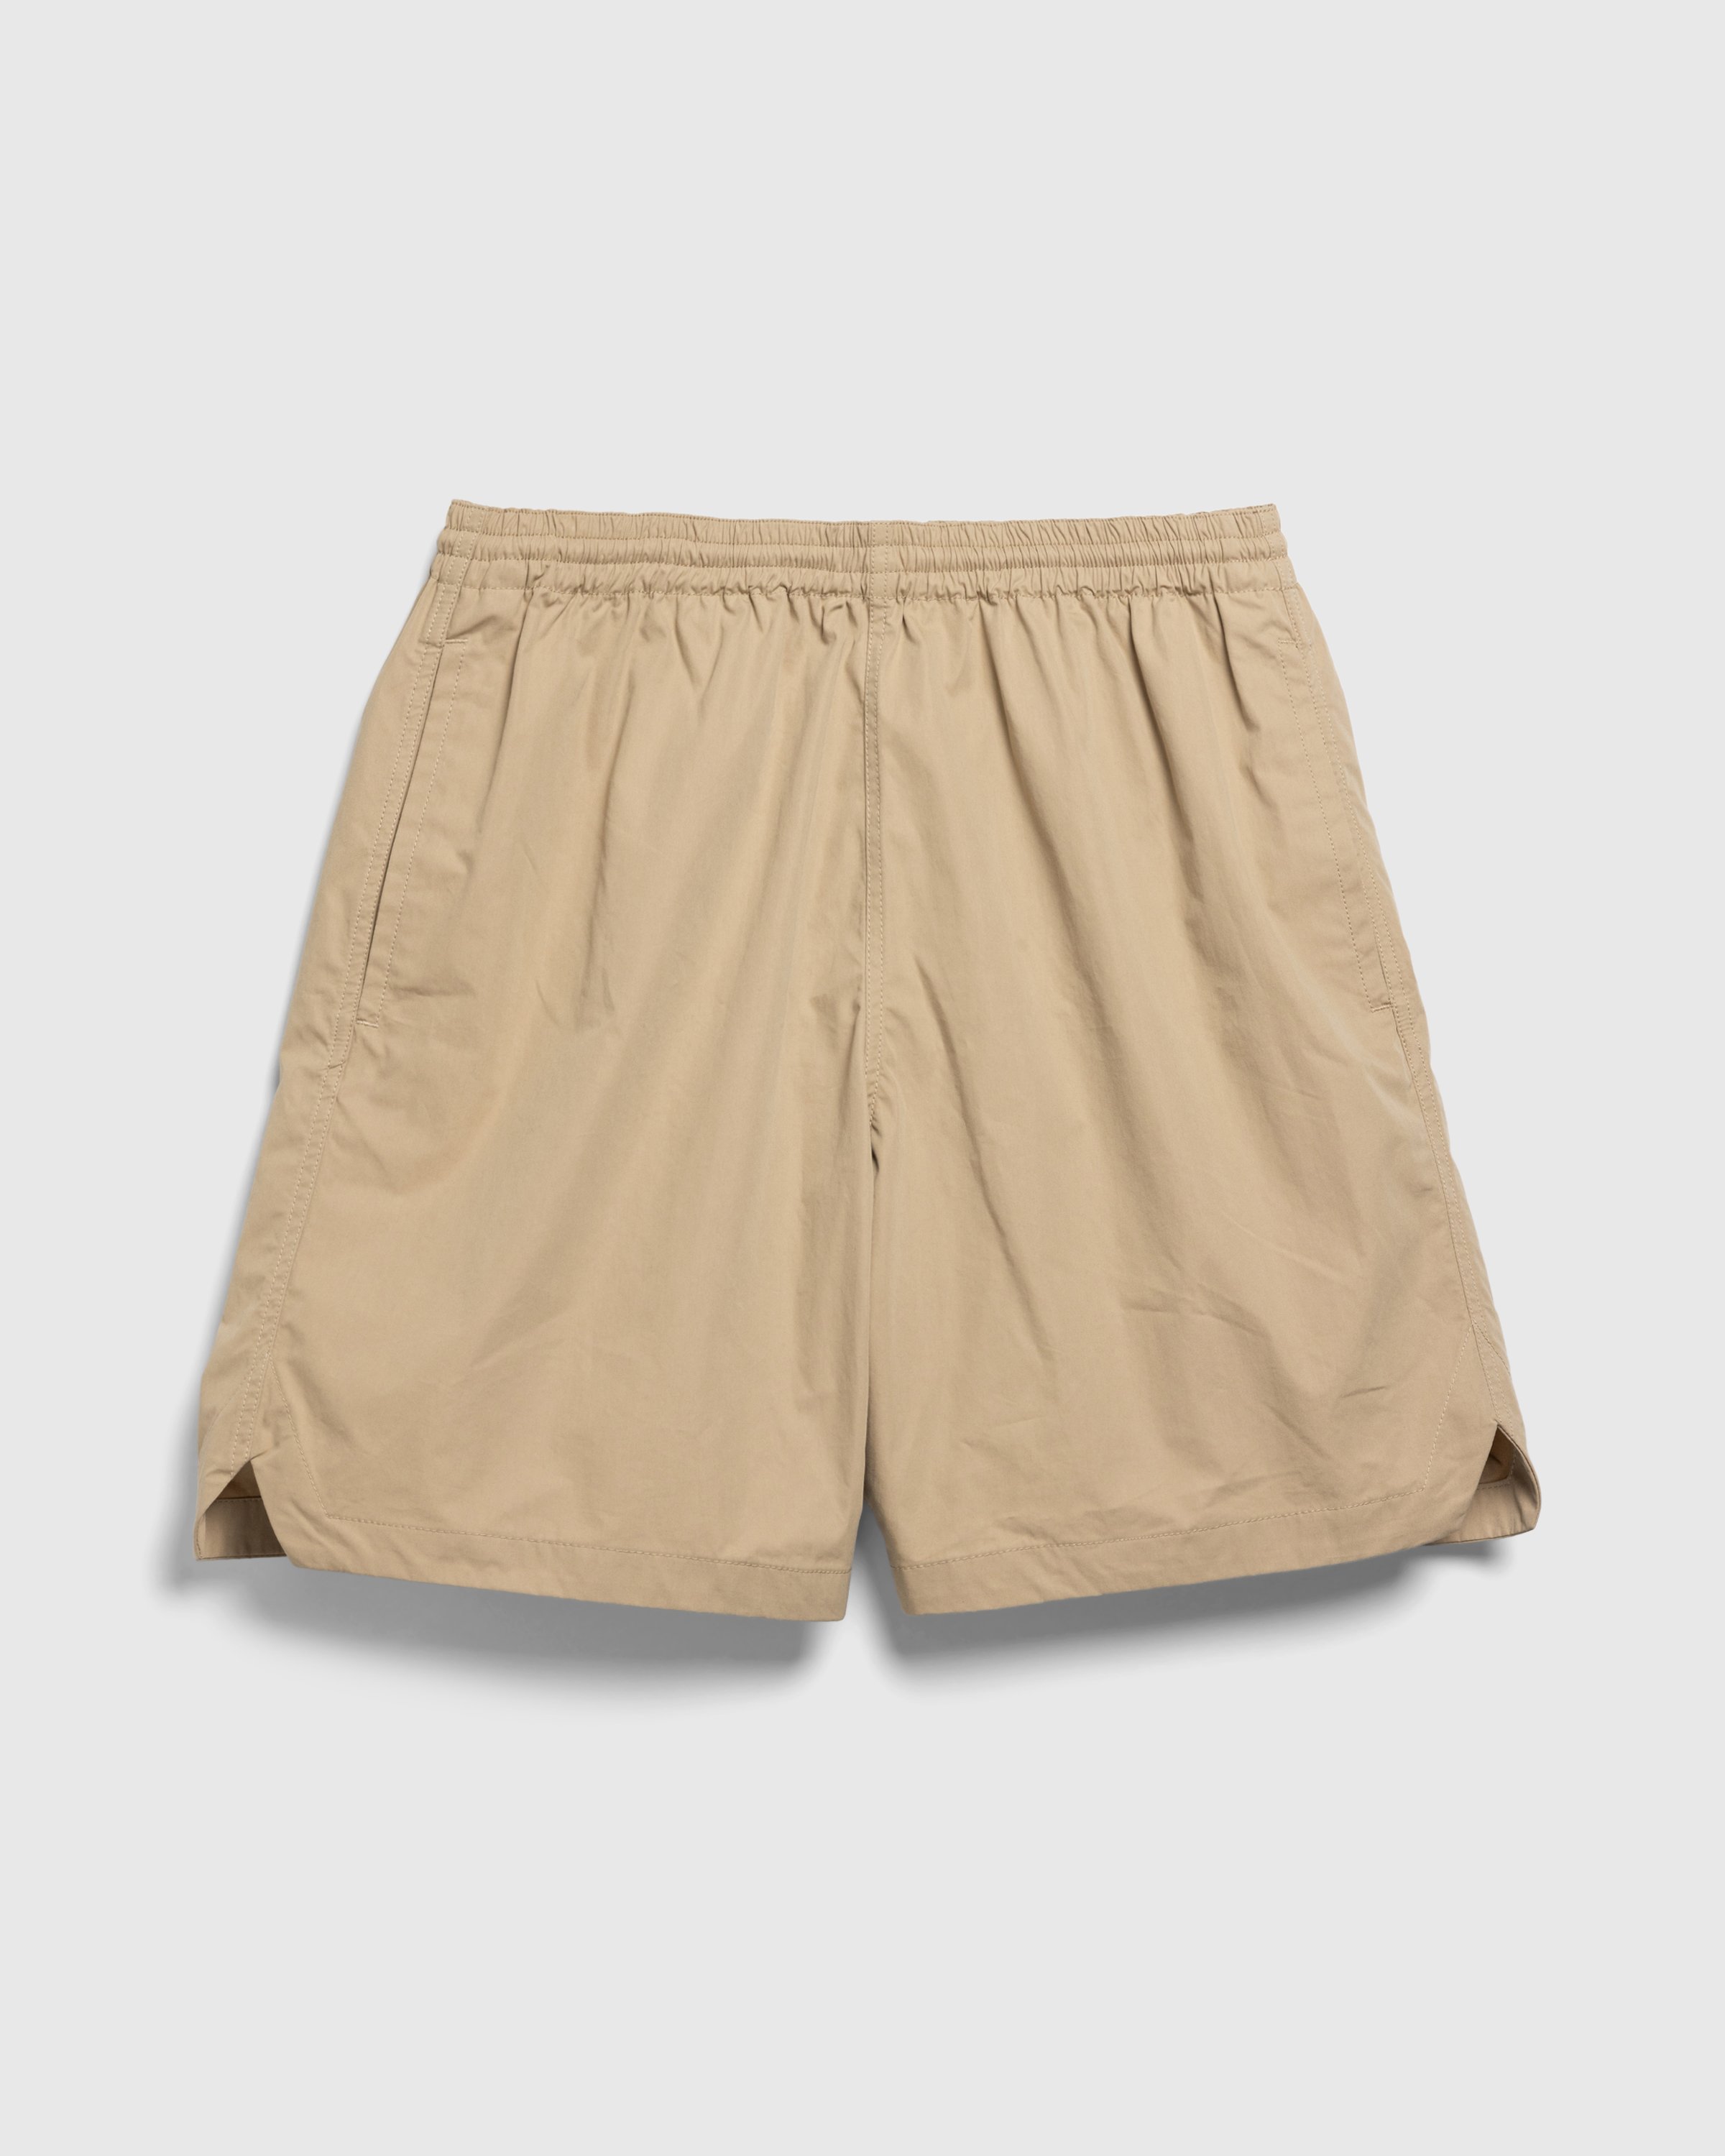 Highsnobiety HS05 - Weather Cloth Nylon Shorts - Clothing - Beige - Image 1